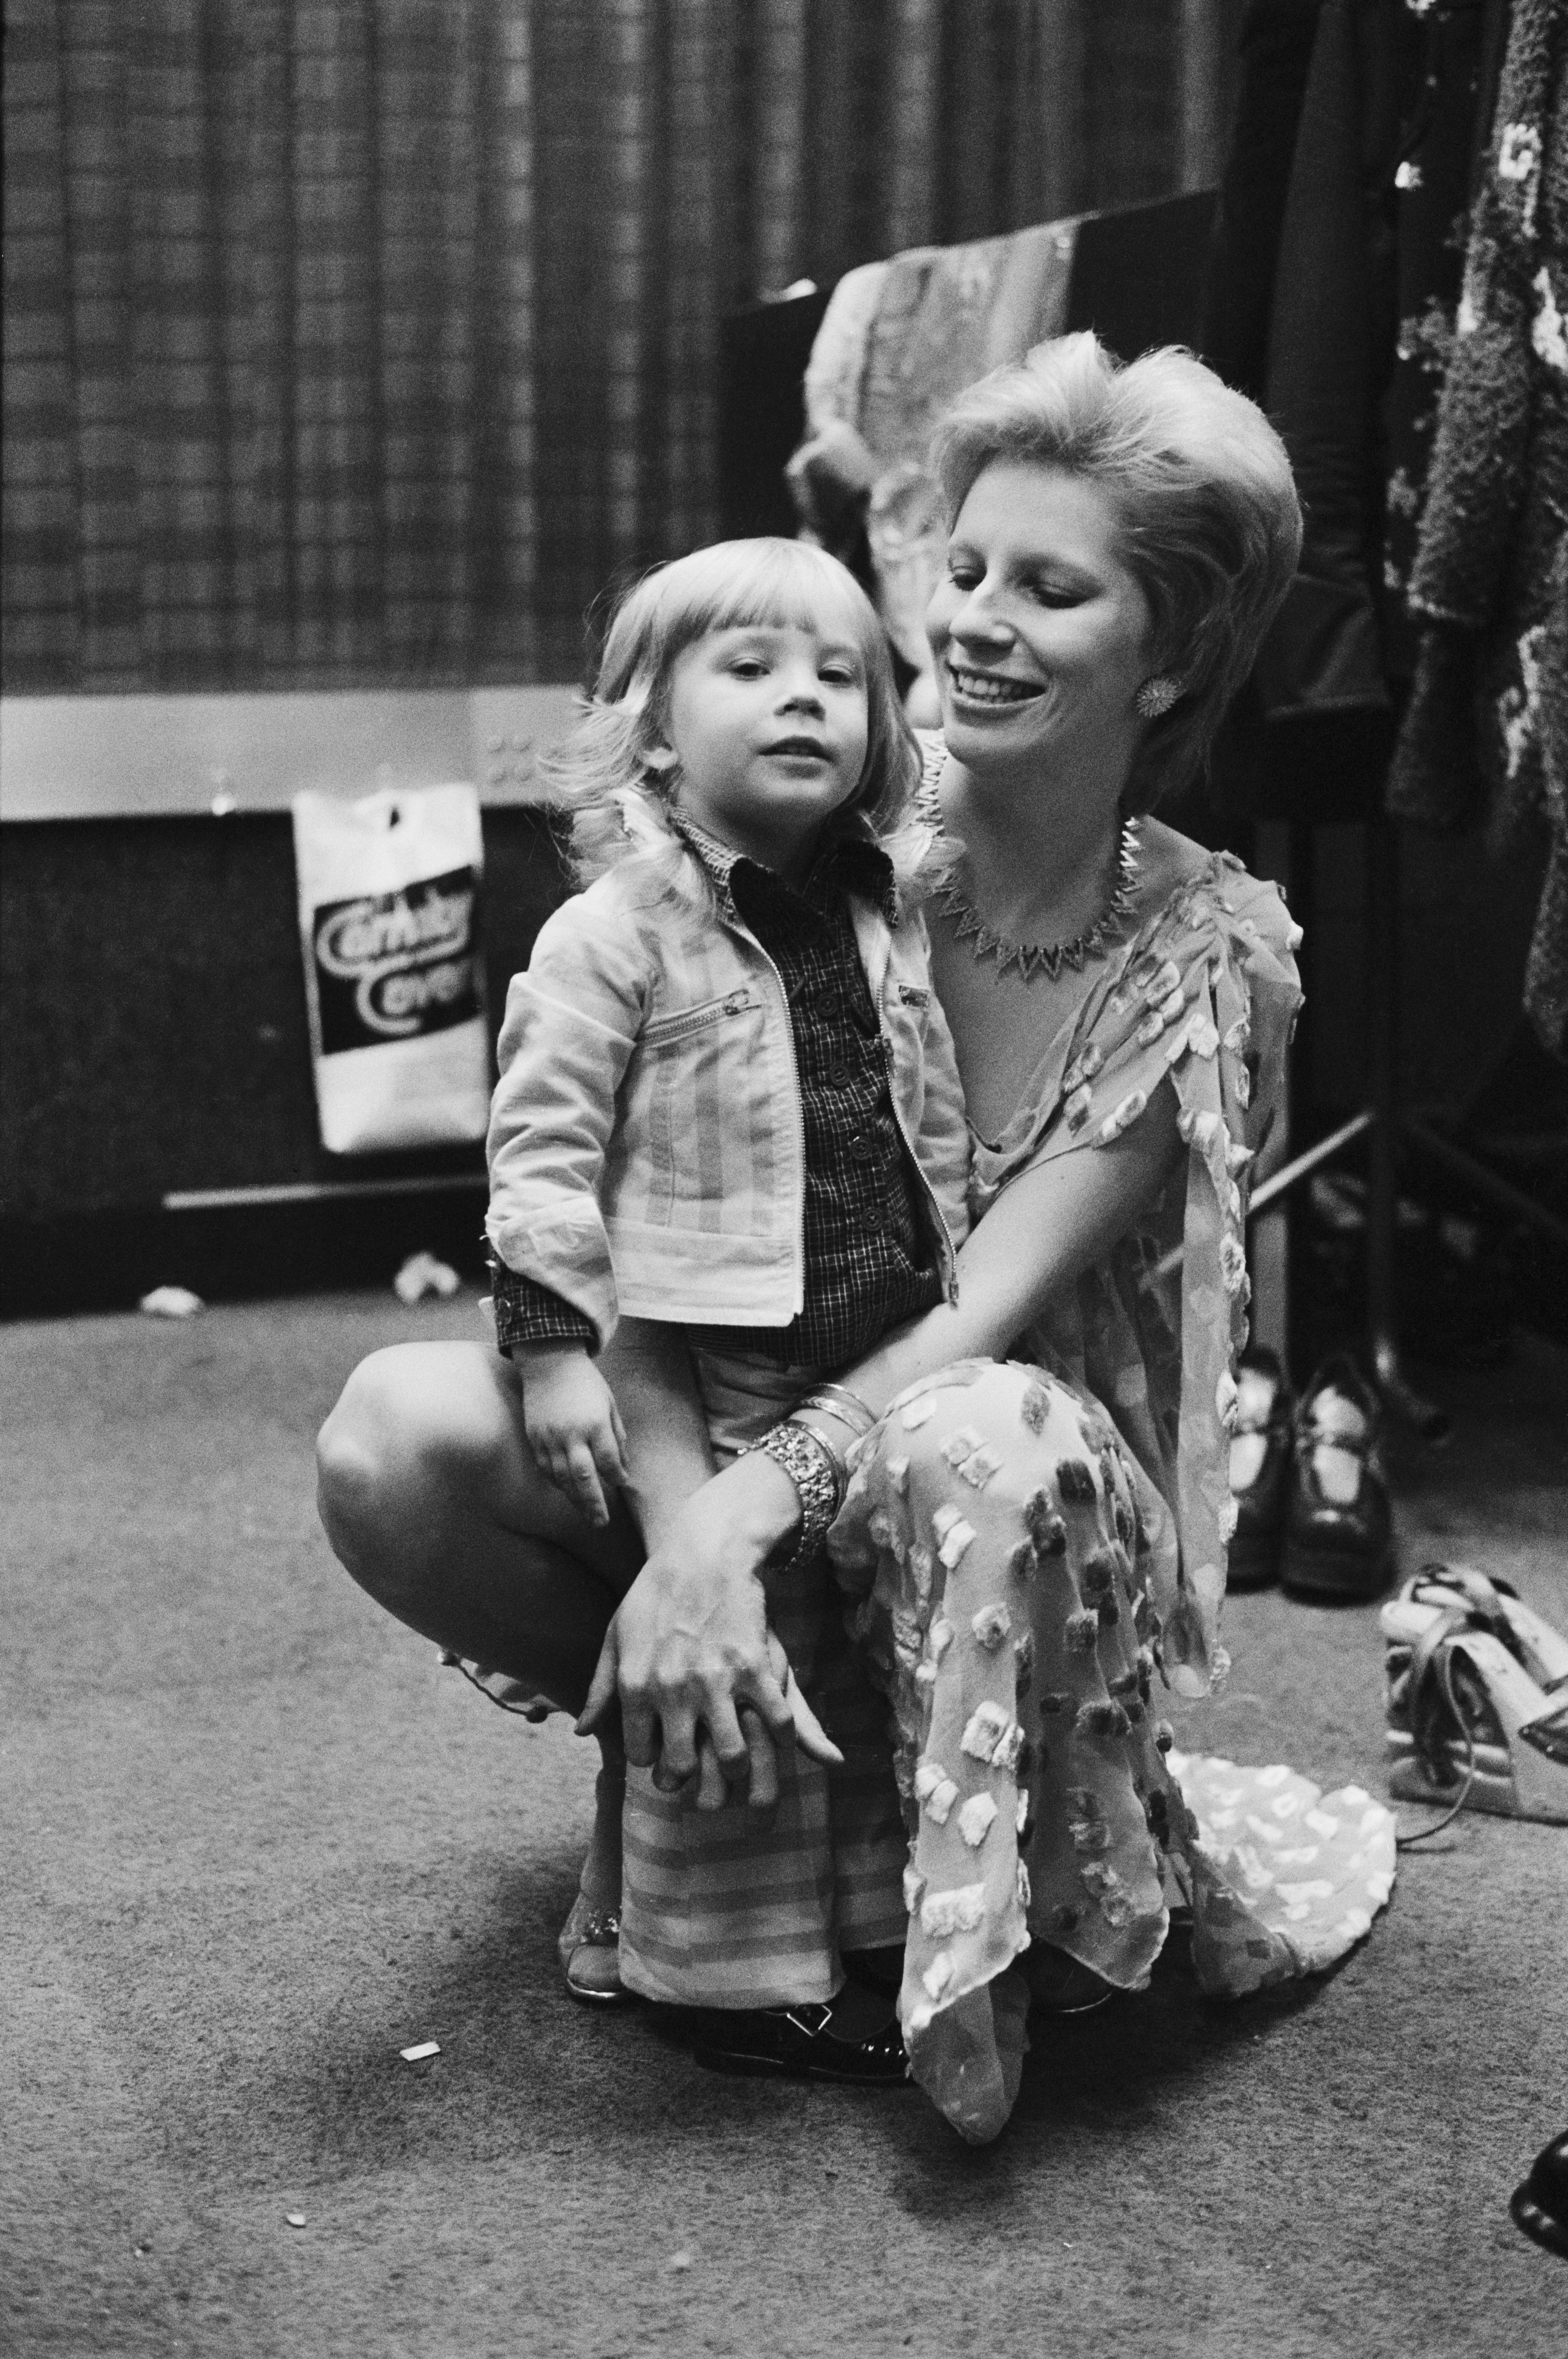 Duncan com a mãe, Angie Bowie, em 1973 (Foto: Getty Imagez / Terry O'Neill)